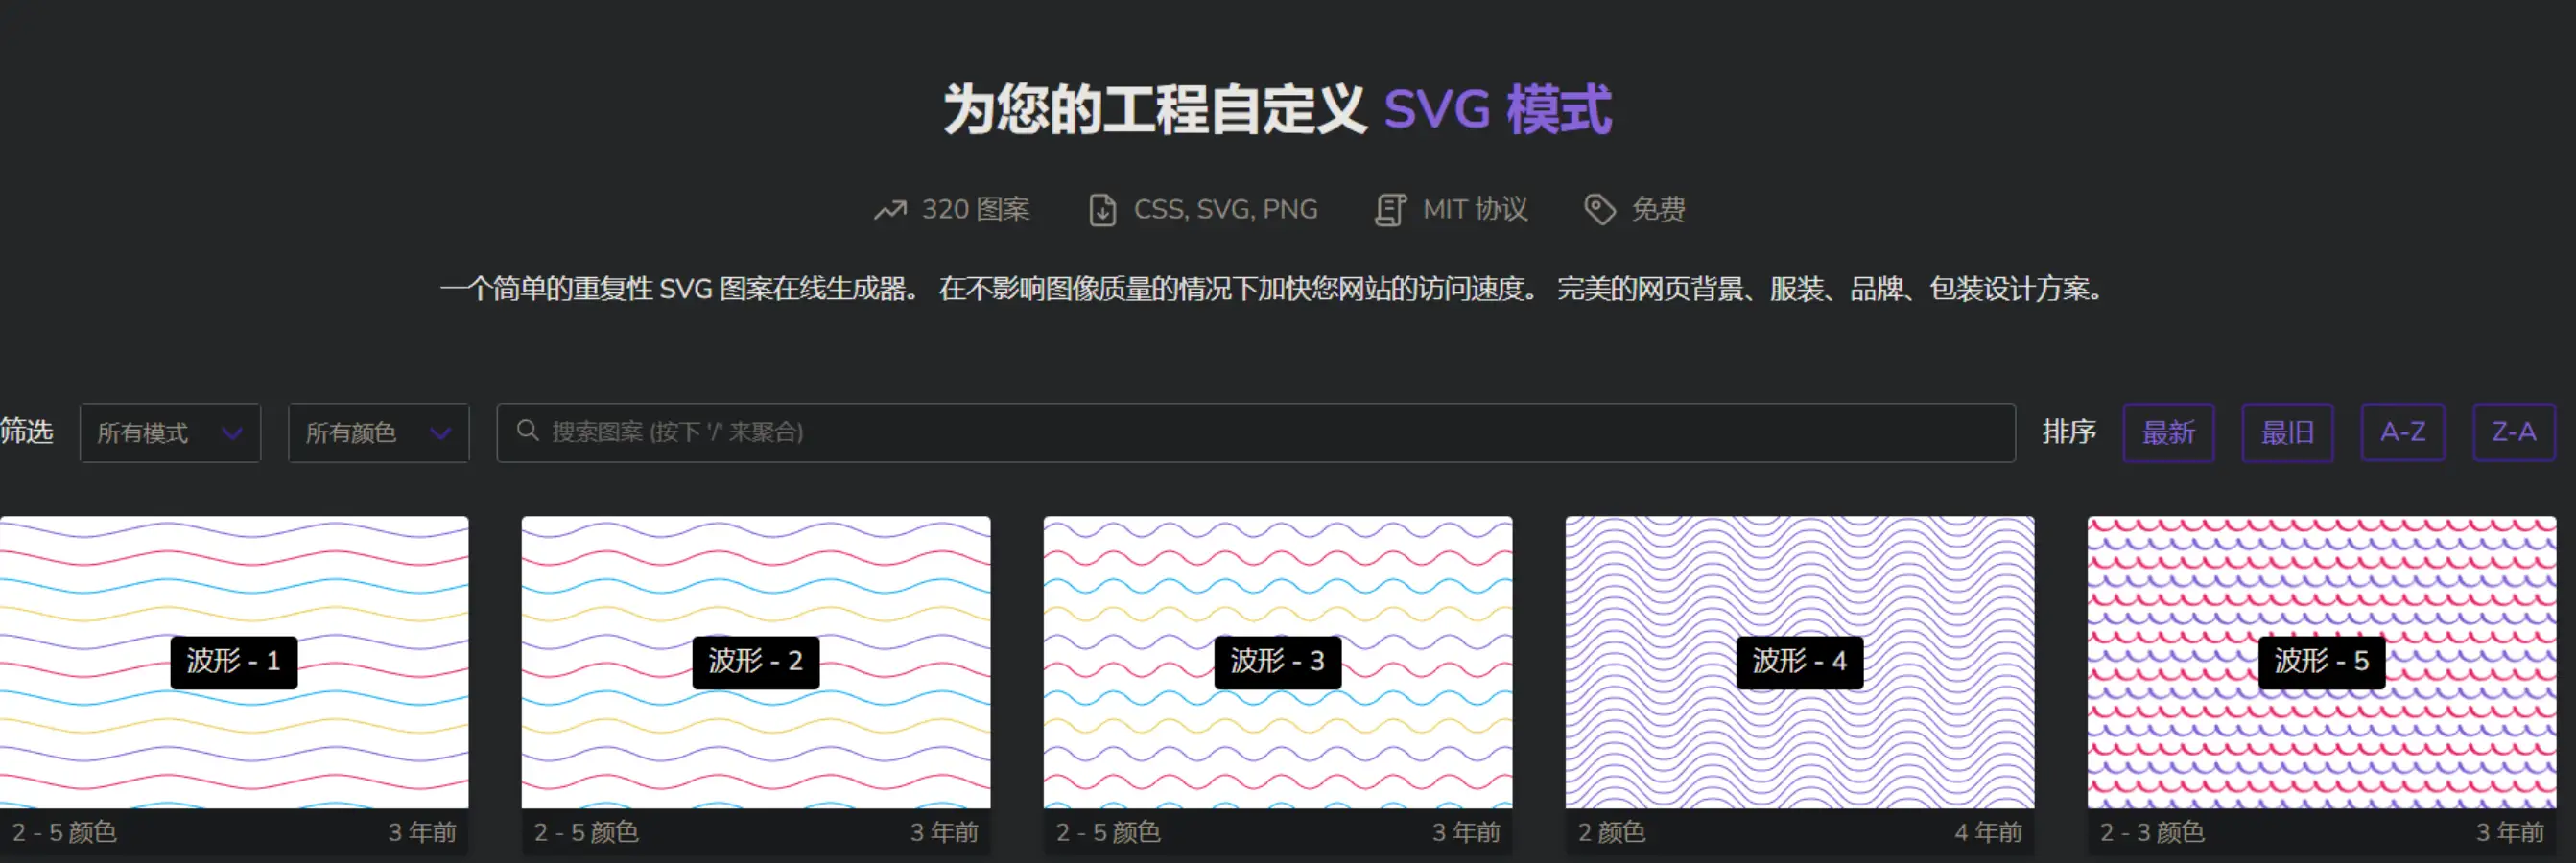 一开始使用的SVG生成器